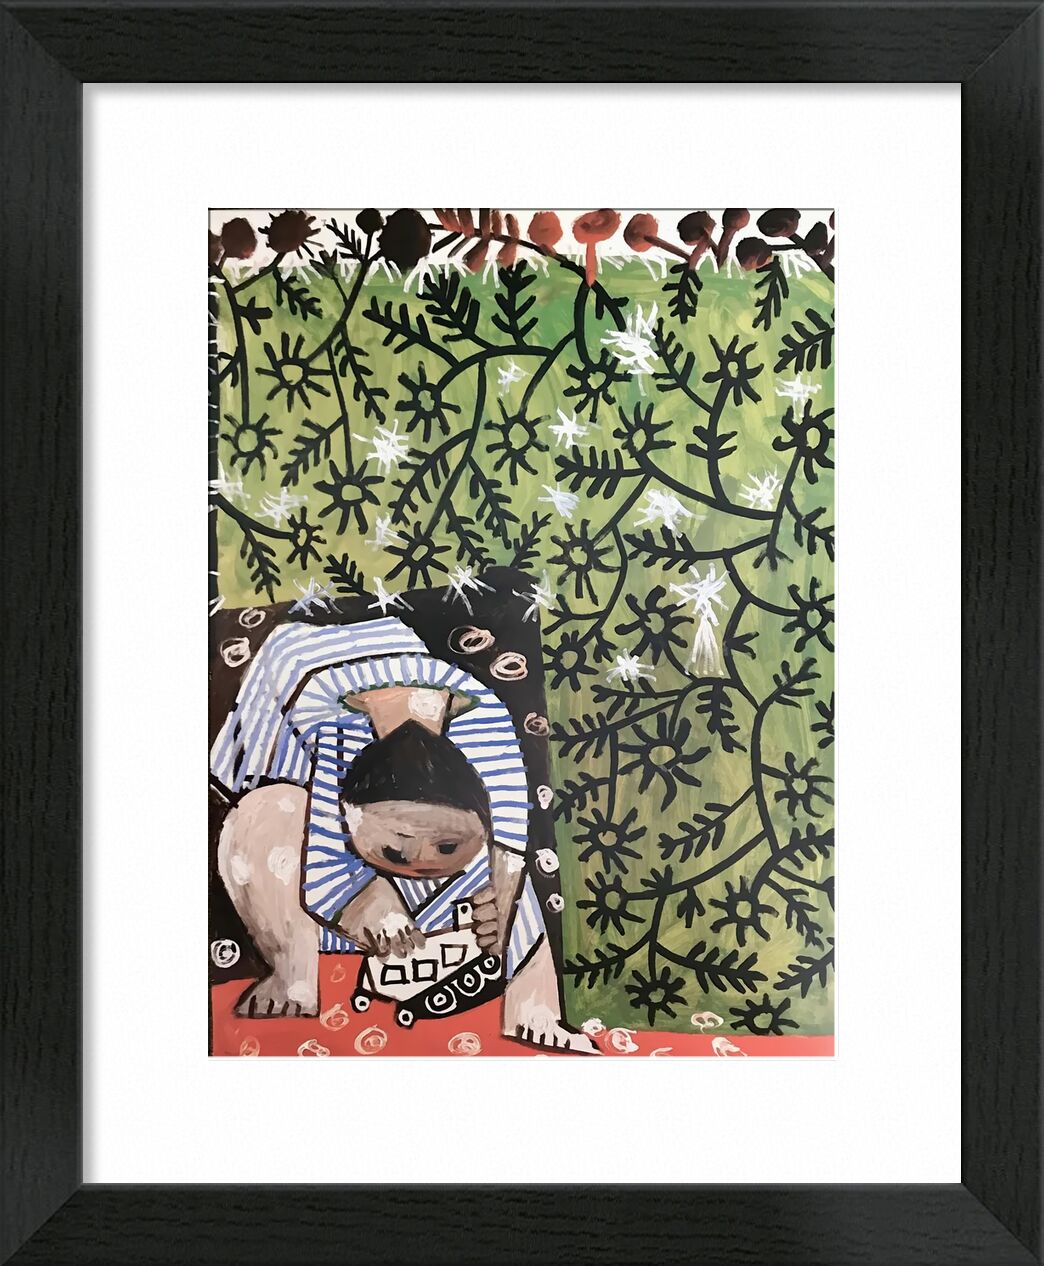 Playing Child - Picasso von Bildende Kunst, Prodi Art, abstrakt, Kind, Malerei, Picasso